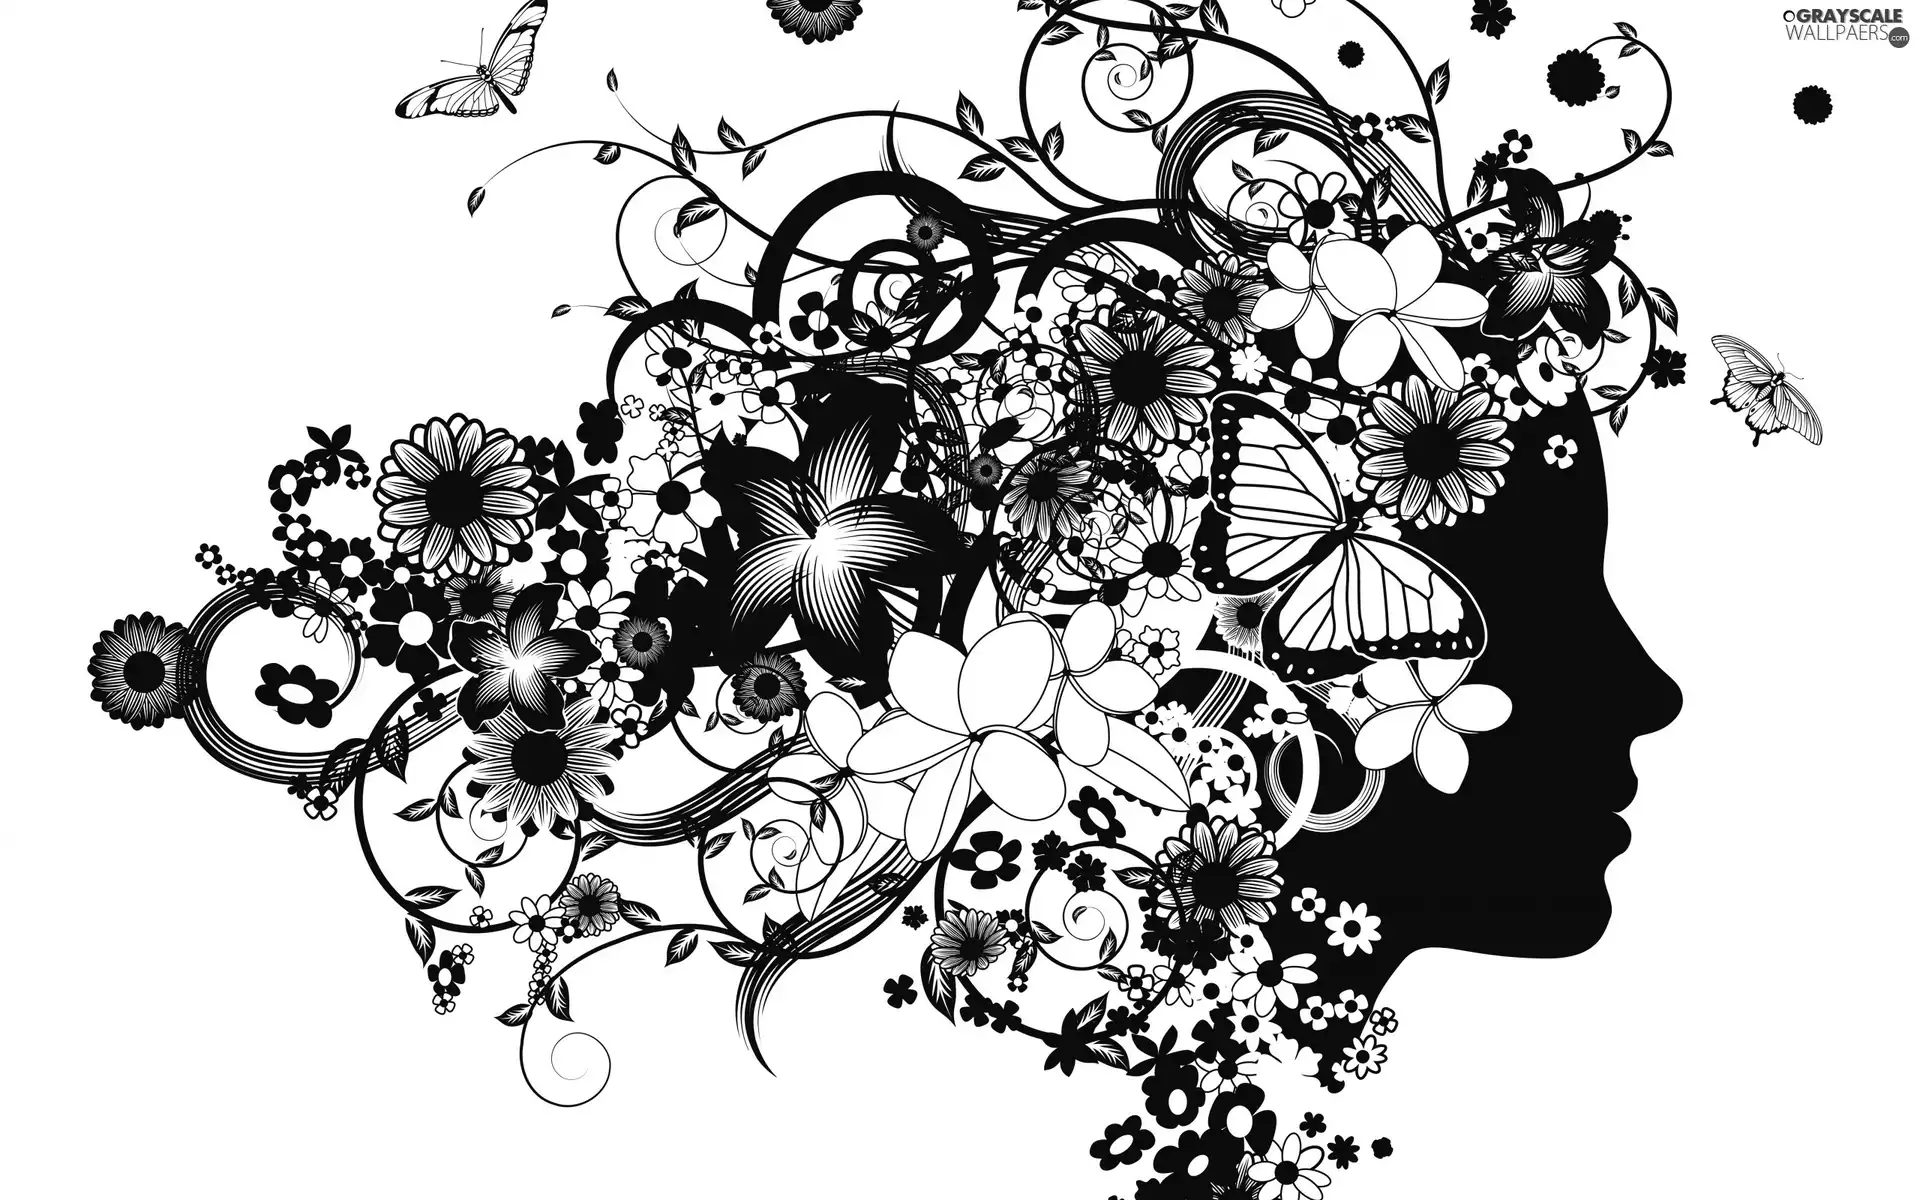 Women, Flowers, graphics, butterflies